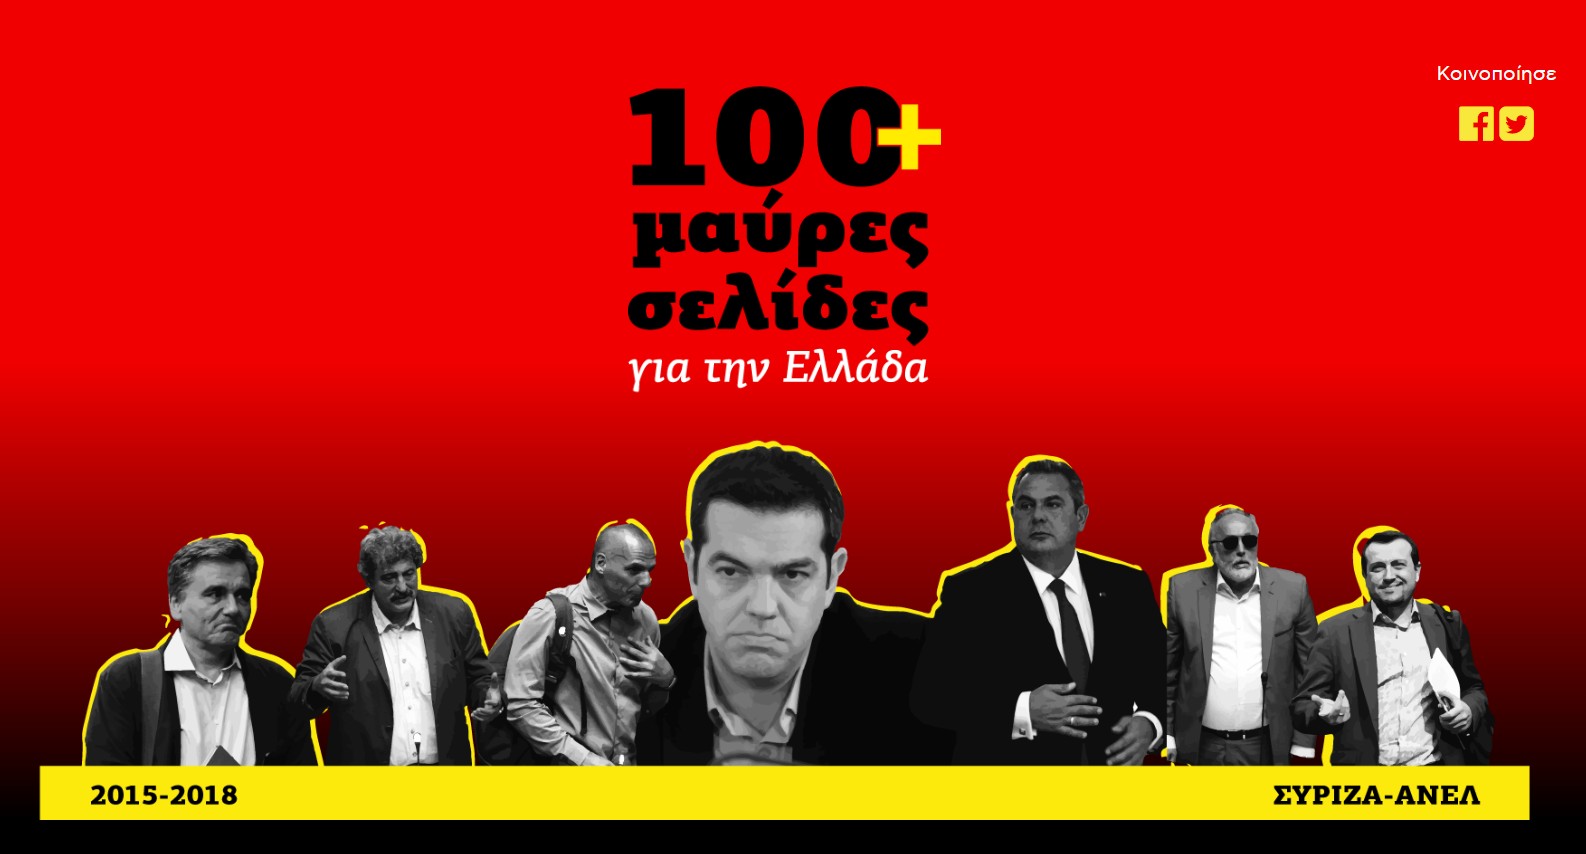 Πήρε φωτιά το διαδίκτυο με το site 100 μαύρες σελίδες για την Ελλάδα που έφτιαξε η Νέα Δημοκρατία για τα... πεπραγμένα ΣΥΡΙΖΑΝΕΛ - Φωτογραφία 1